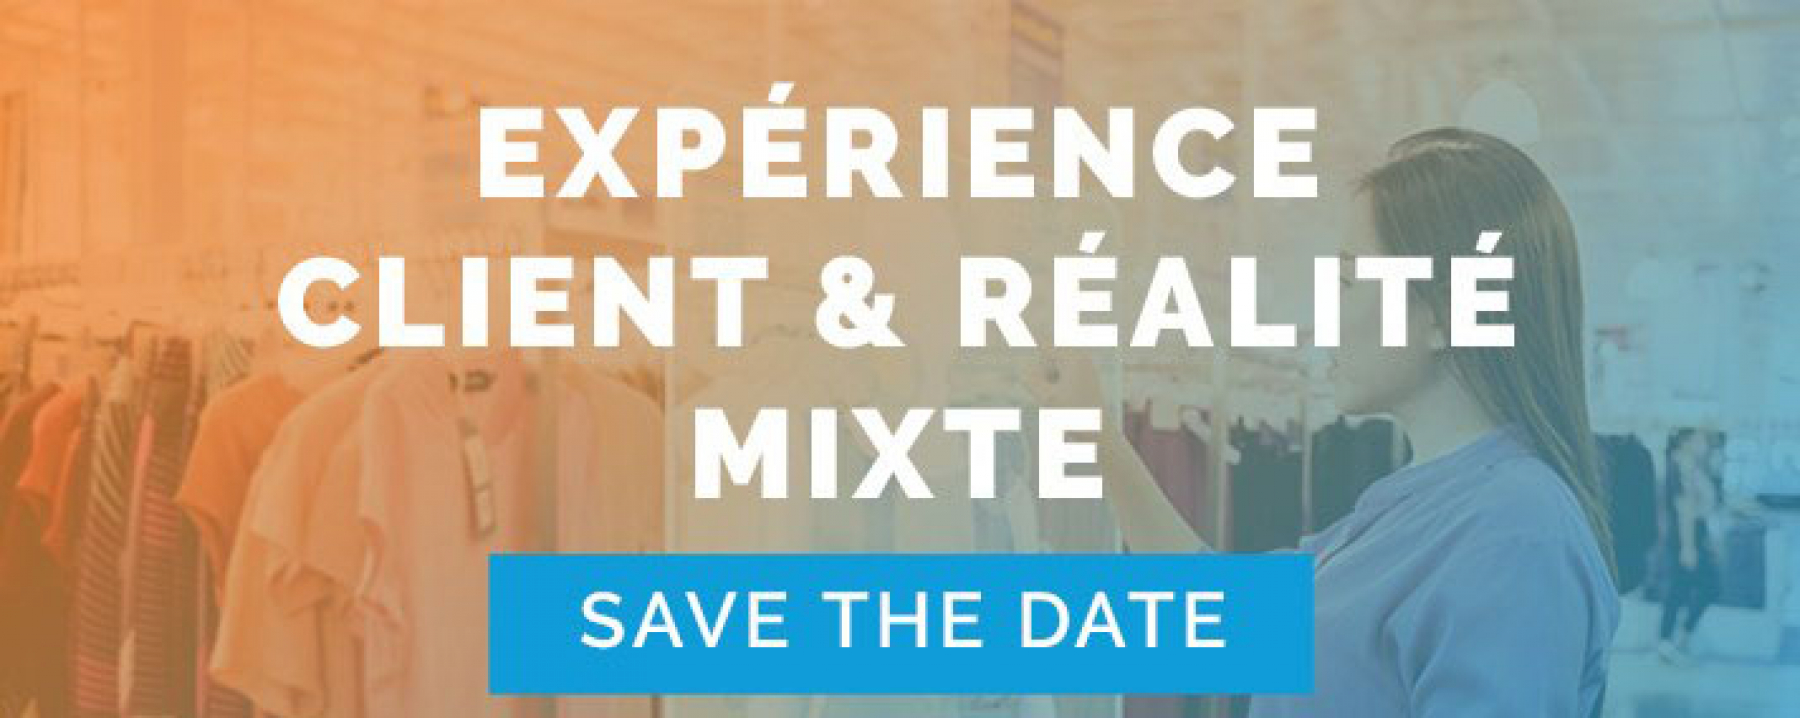 Webinar L'expérience client redéfinie grâce à la réalité mixte, organisé par Smart4D et le Club Commerce Connecté, le 2 juin 2020